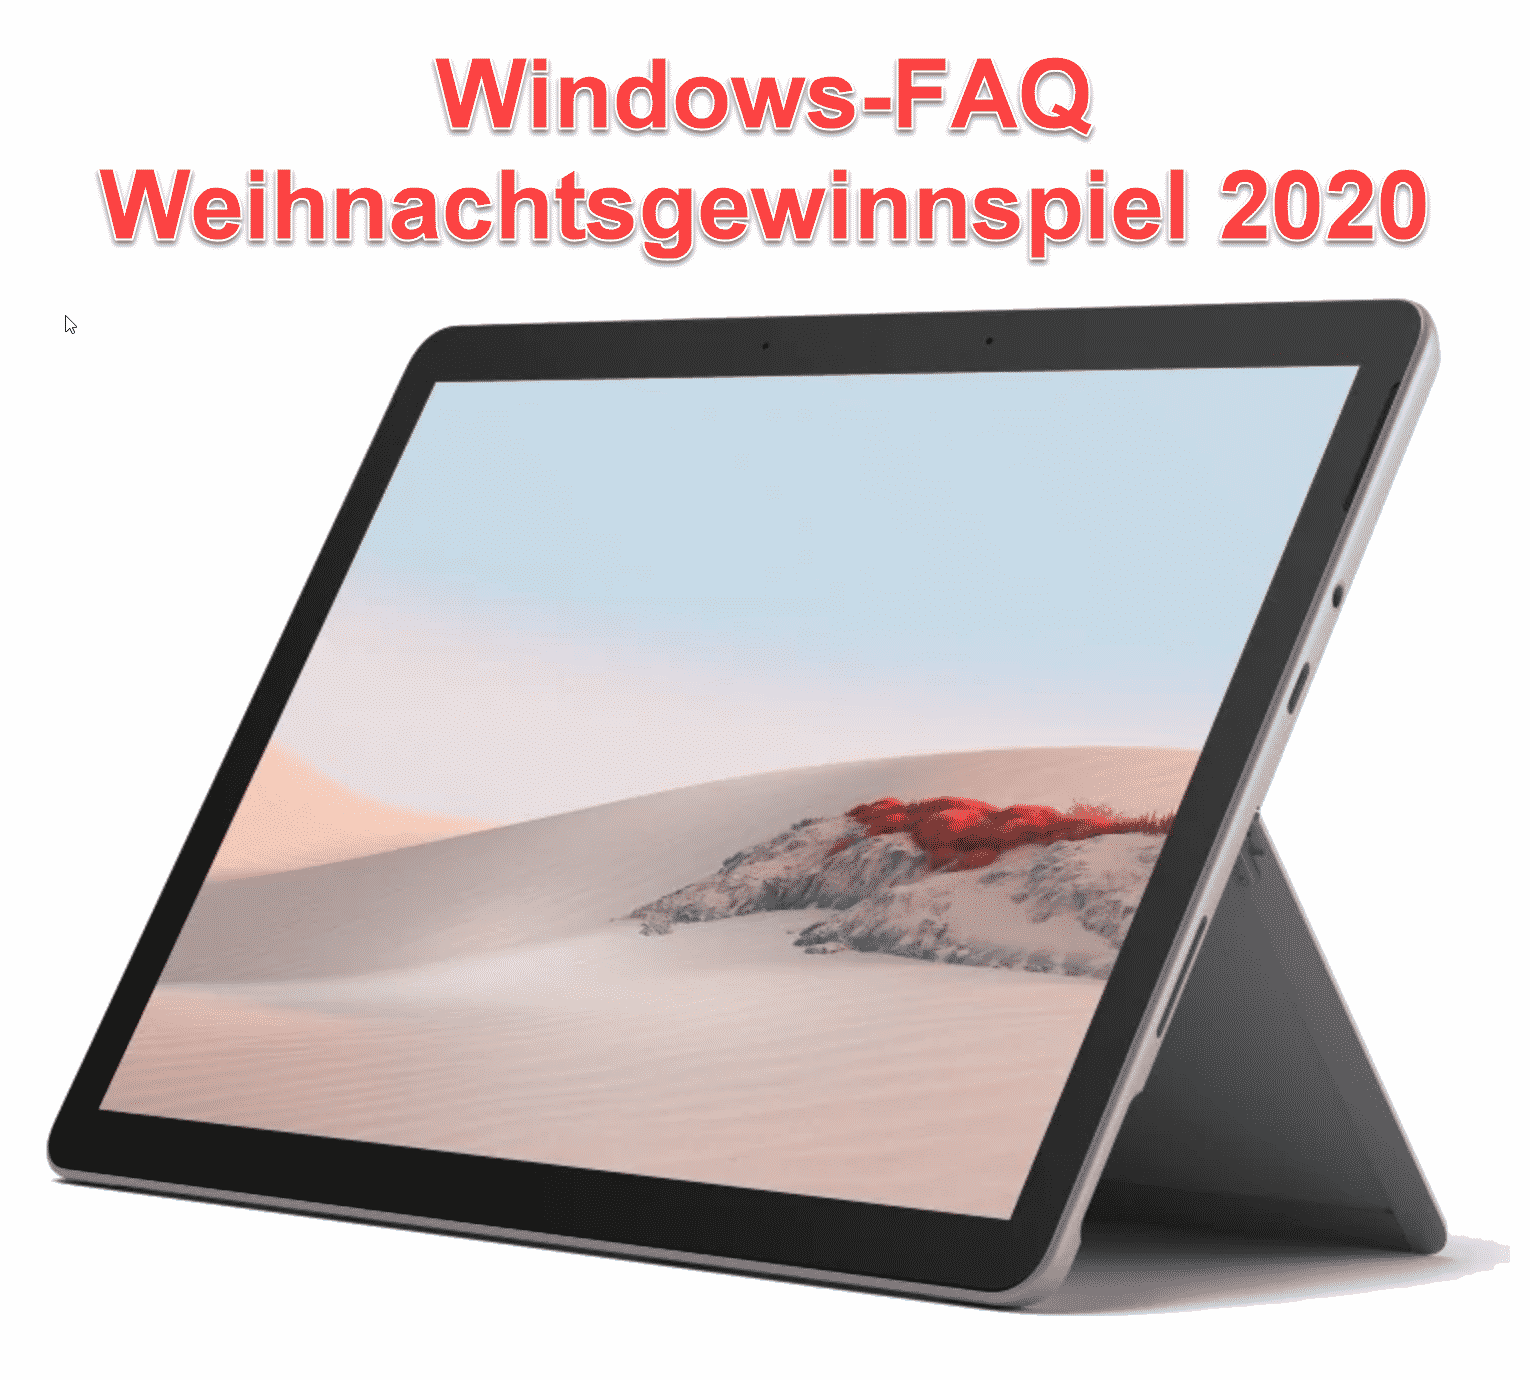 Weihnachtsgewinnspiel 2020 von Windows-FAQ.de